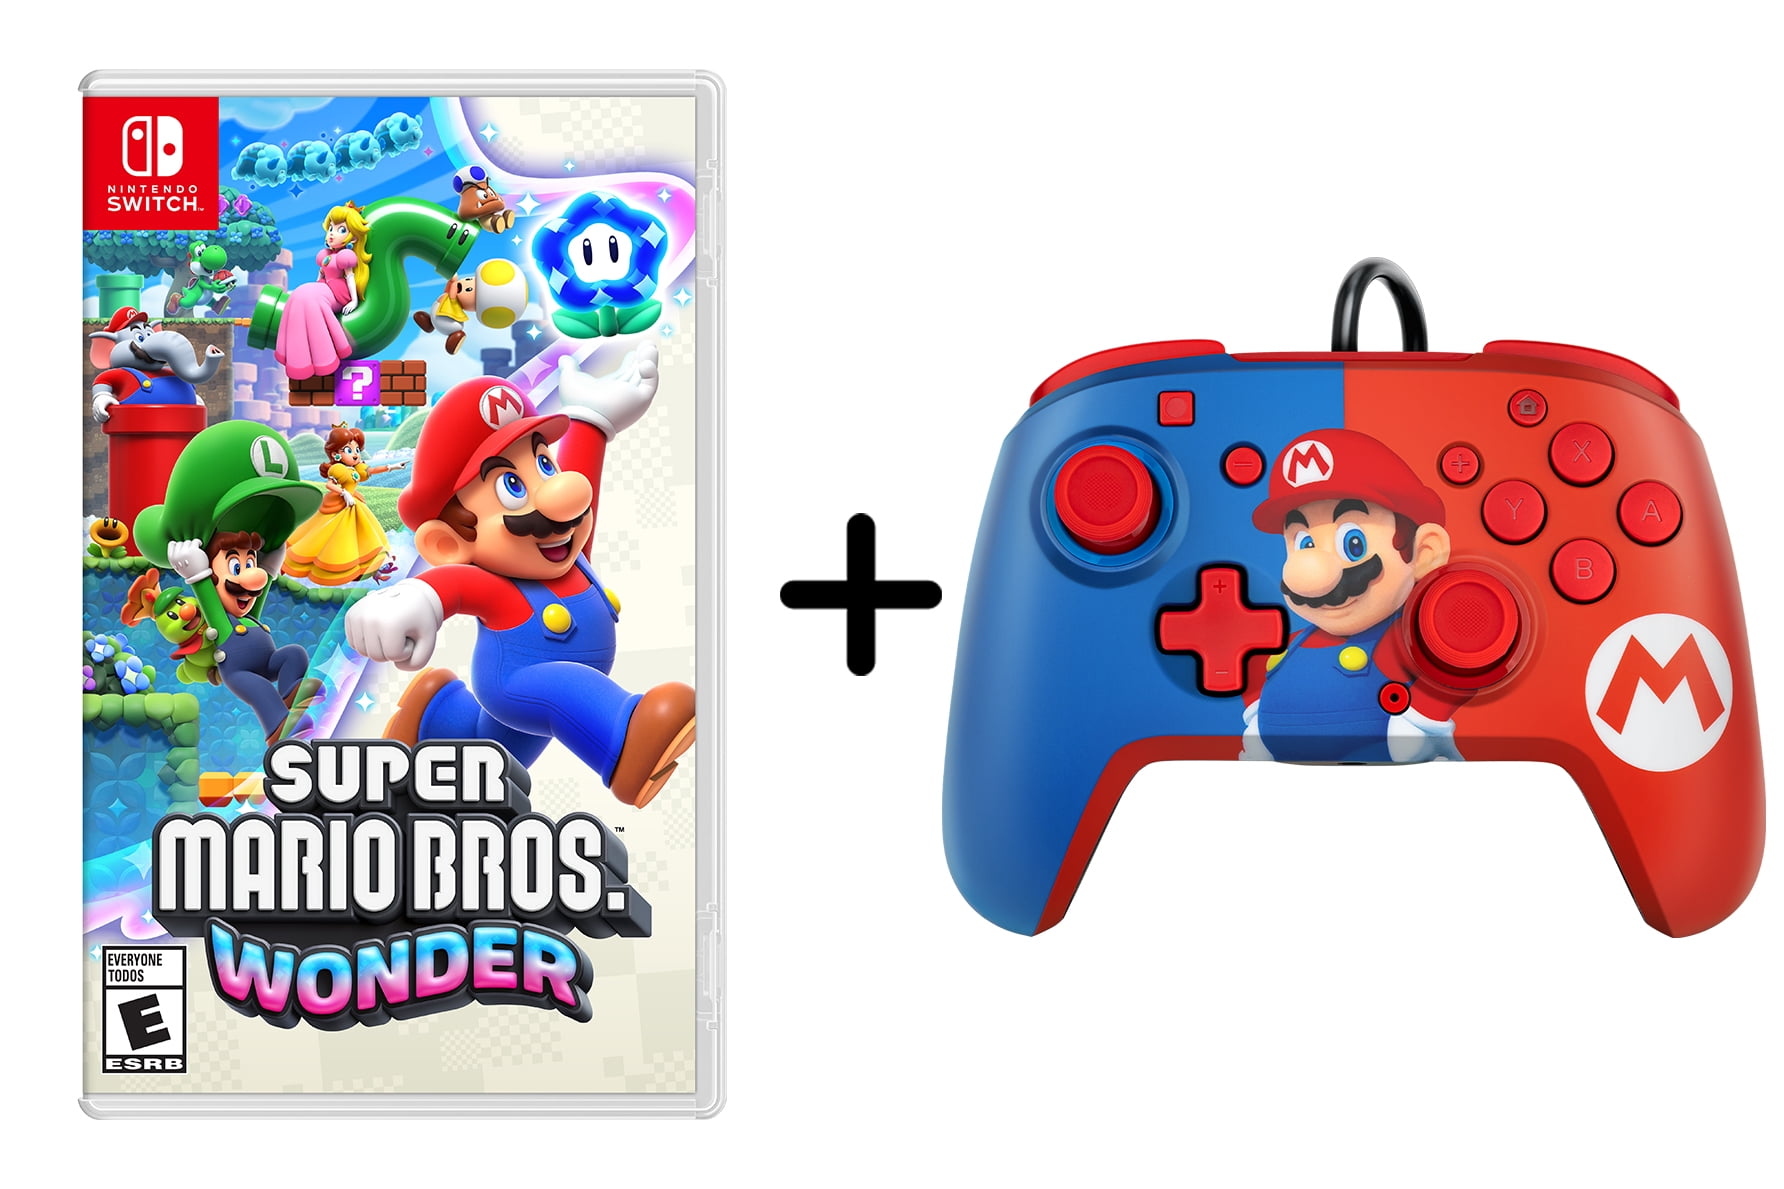 Controller con Cable PDP Mario Super Smash Bros -Licencia oficial-.  Nintendo Switch